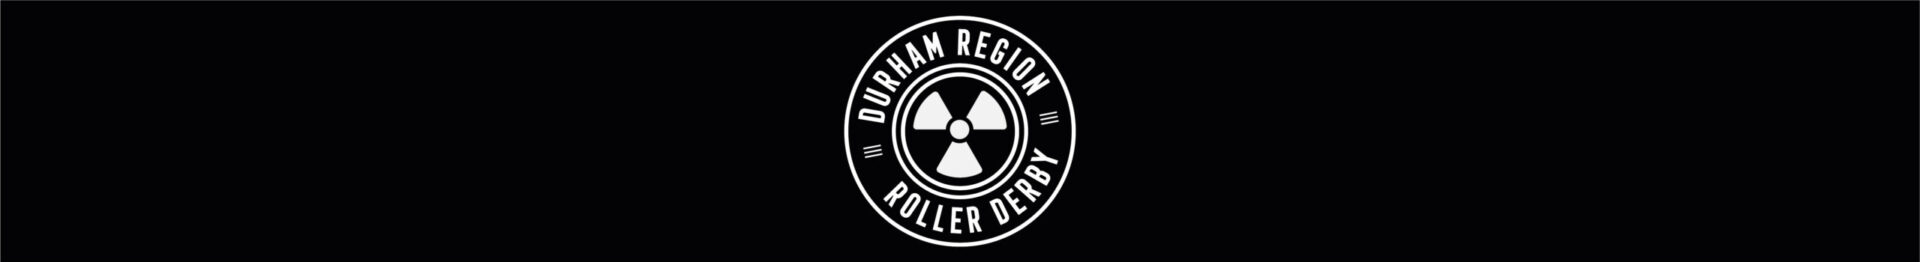 Durham Region Roller Derby